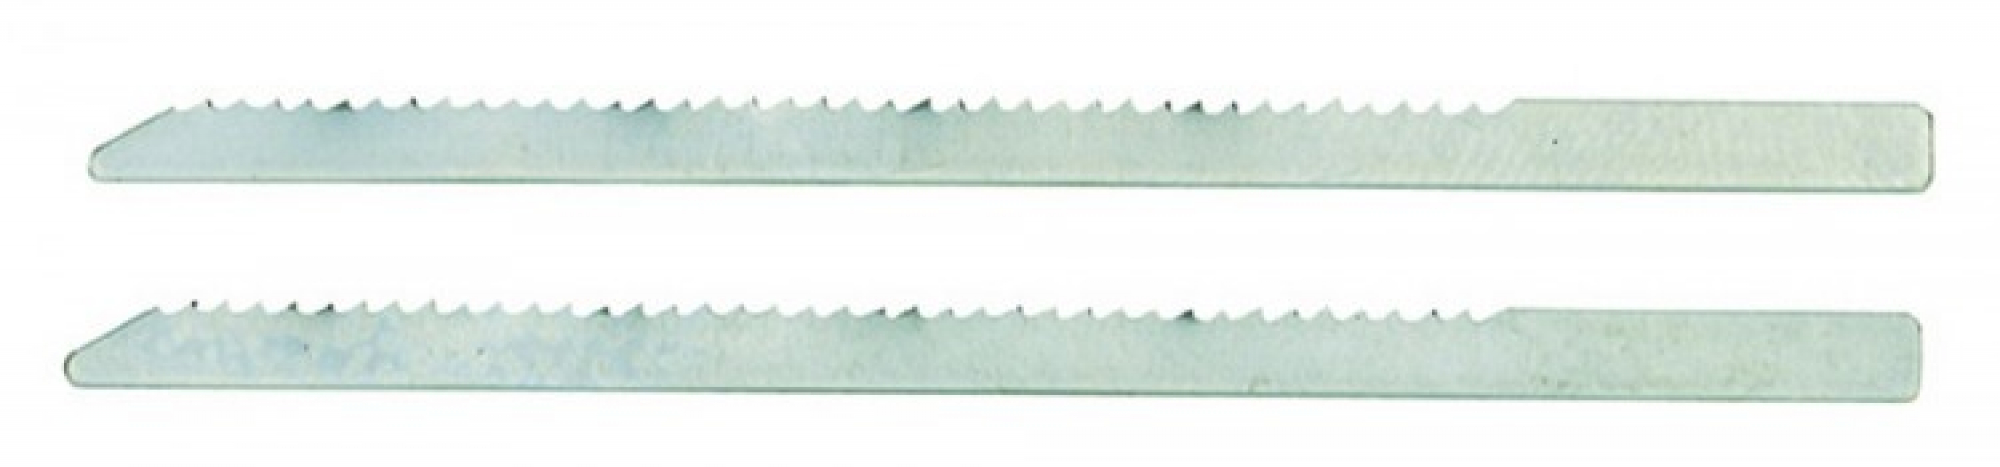 Jigsaw blades (HSS), 2 pieces (pitch 1.5 mm)